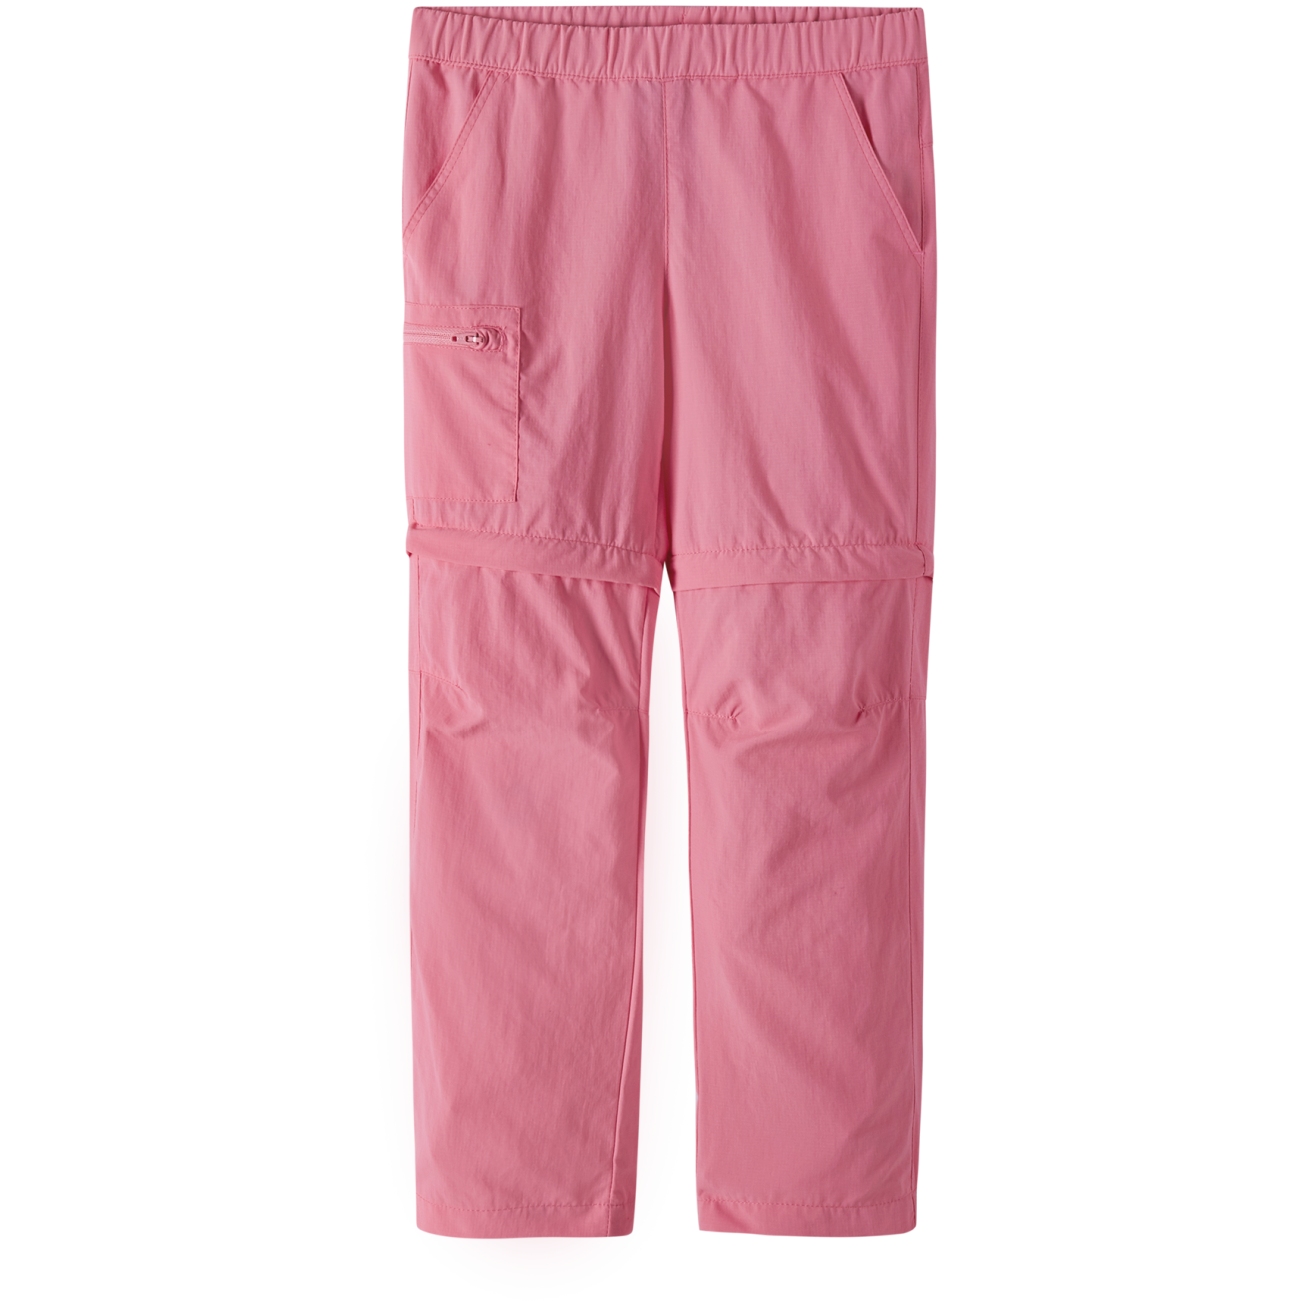 Produktbild von Reima Muunto Zip-Off Hose Kinder - sunset pink 4370